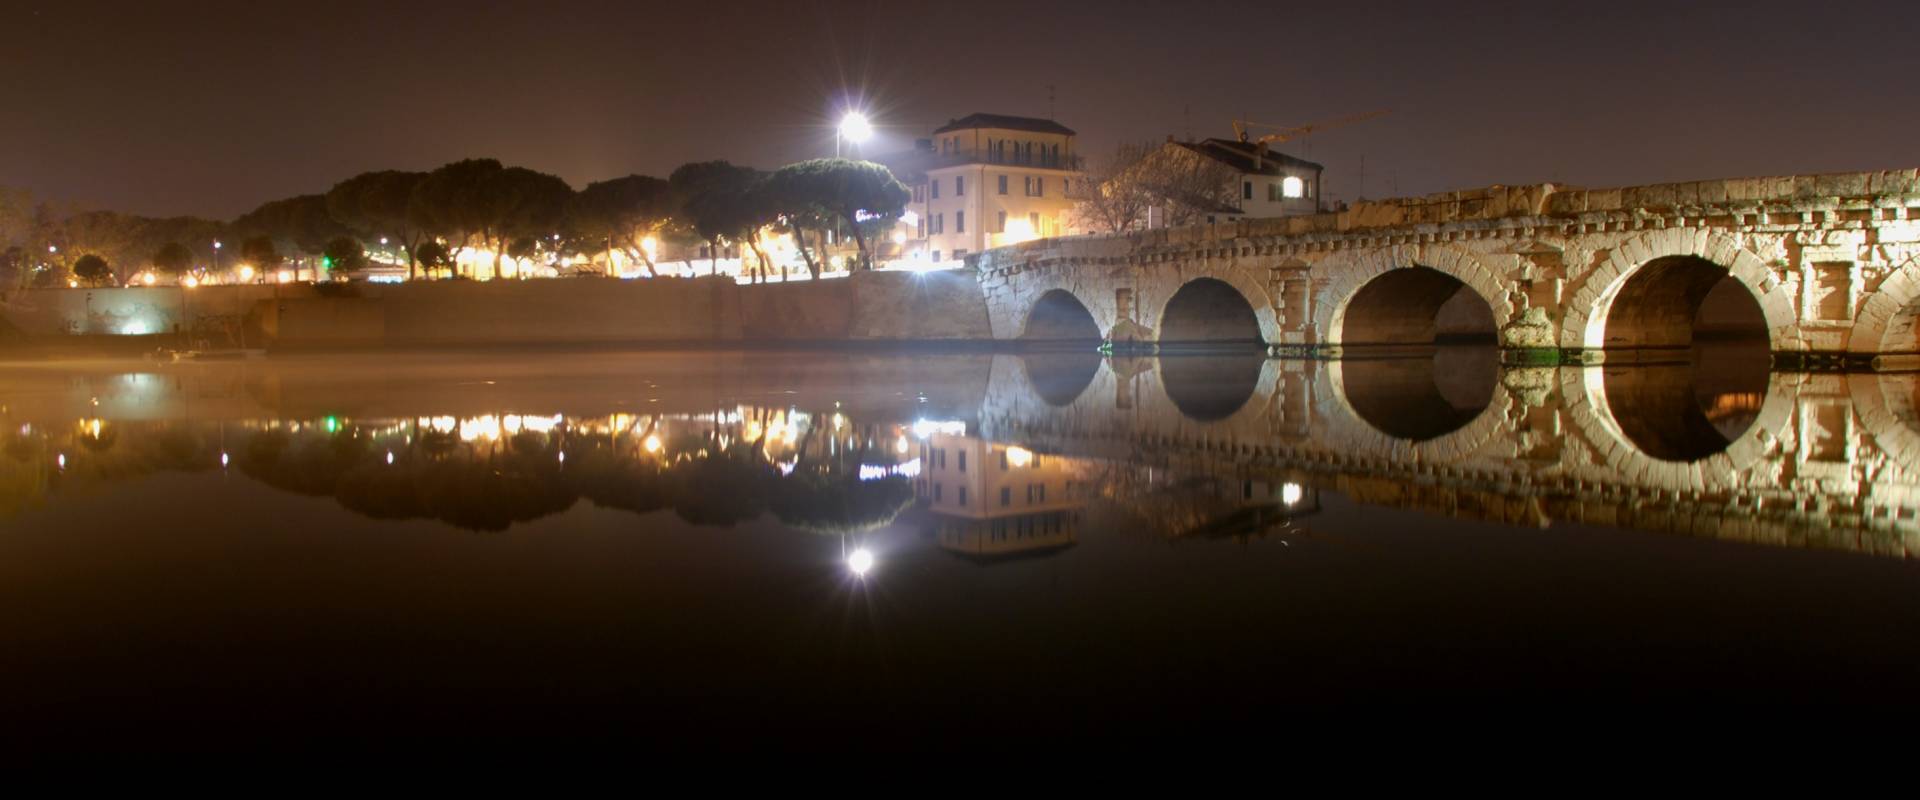 Ponte Tiberio night foto di Scorpione 68